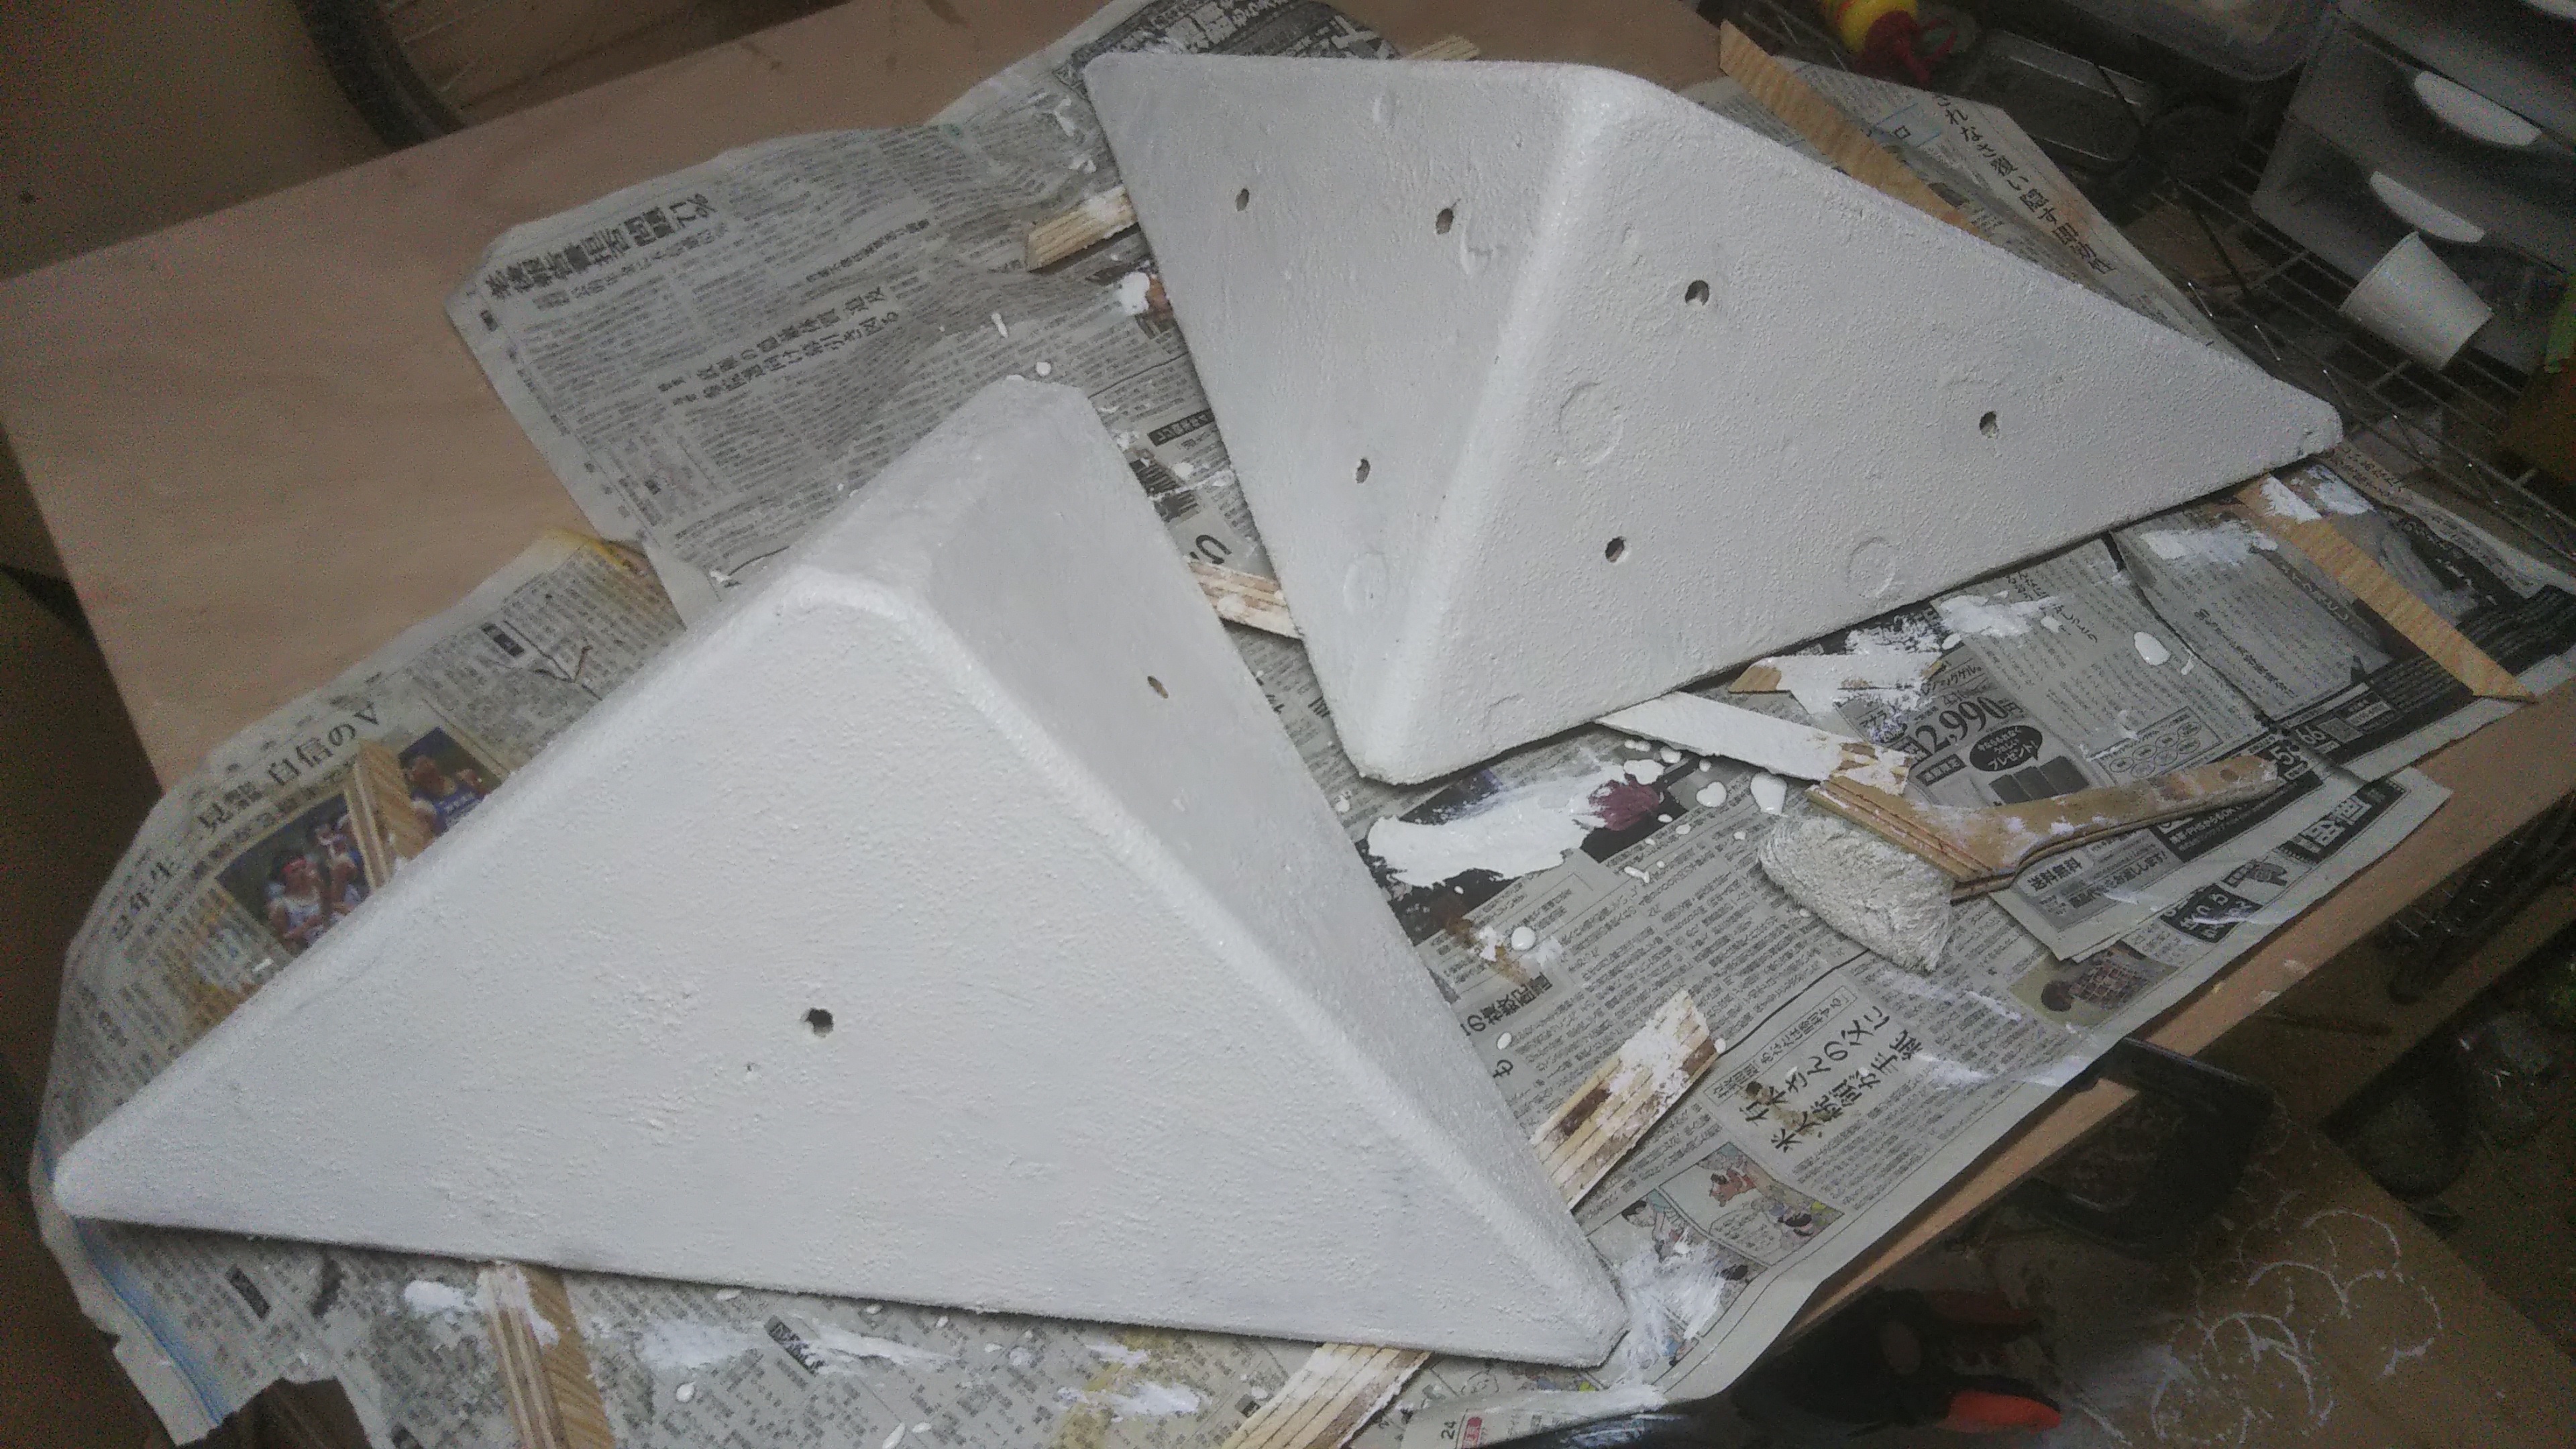 下地塗装を終えたハリボテ
ホワイトを塗っておくと後から乗せた色も発色が良くなります。